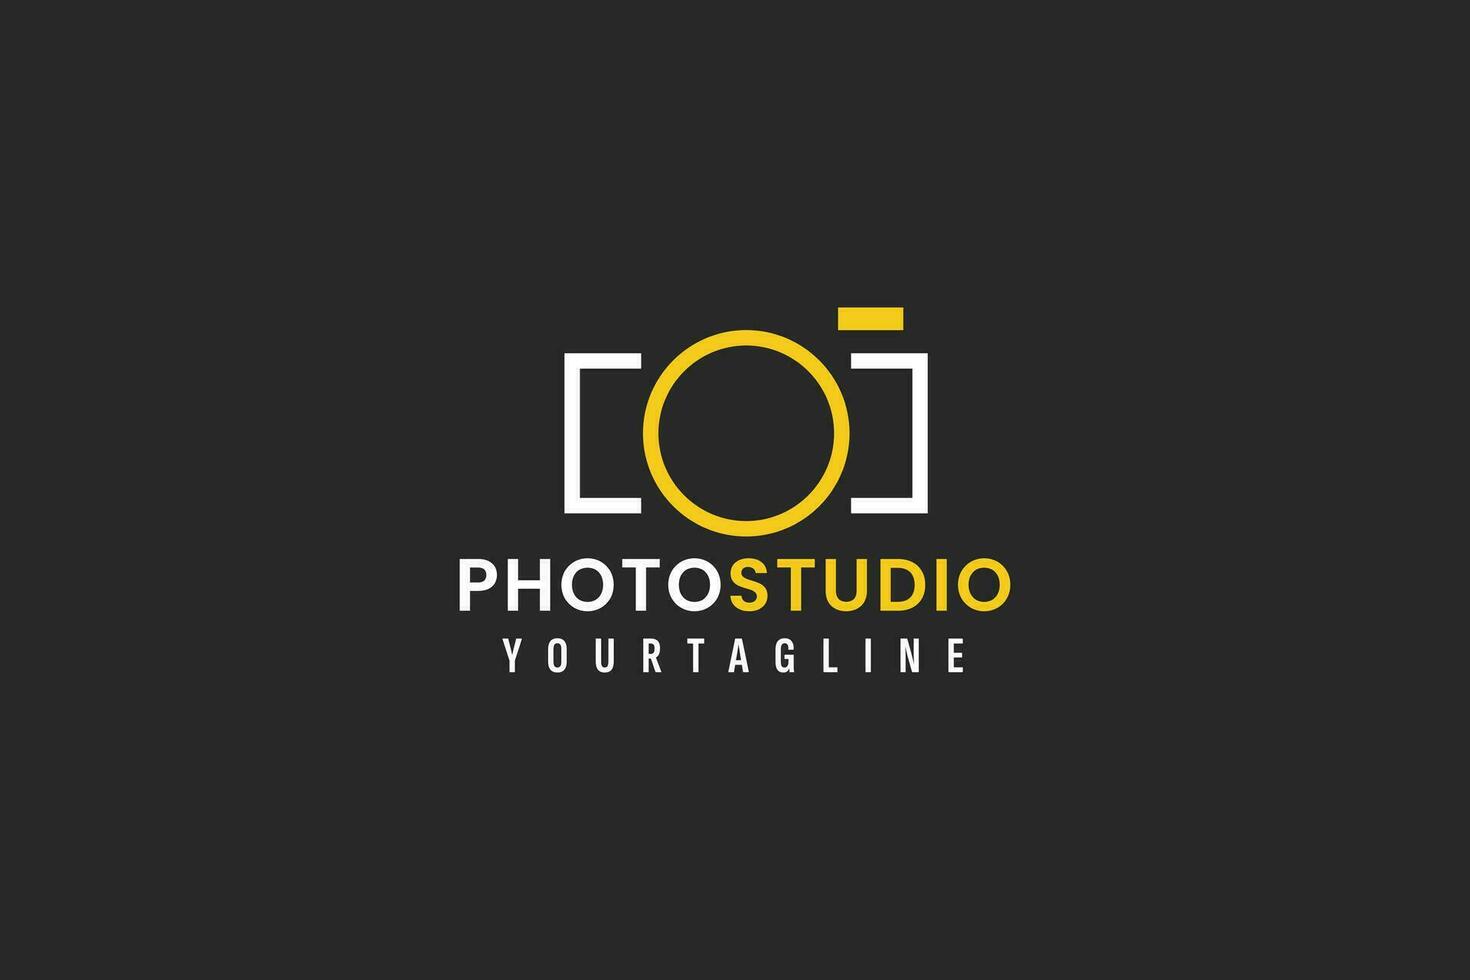 foto estúdio logotipo vetor ícone ilustração